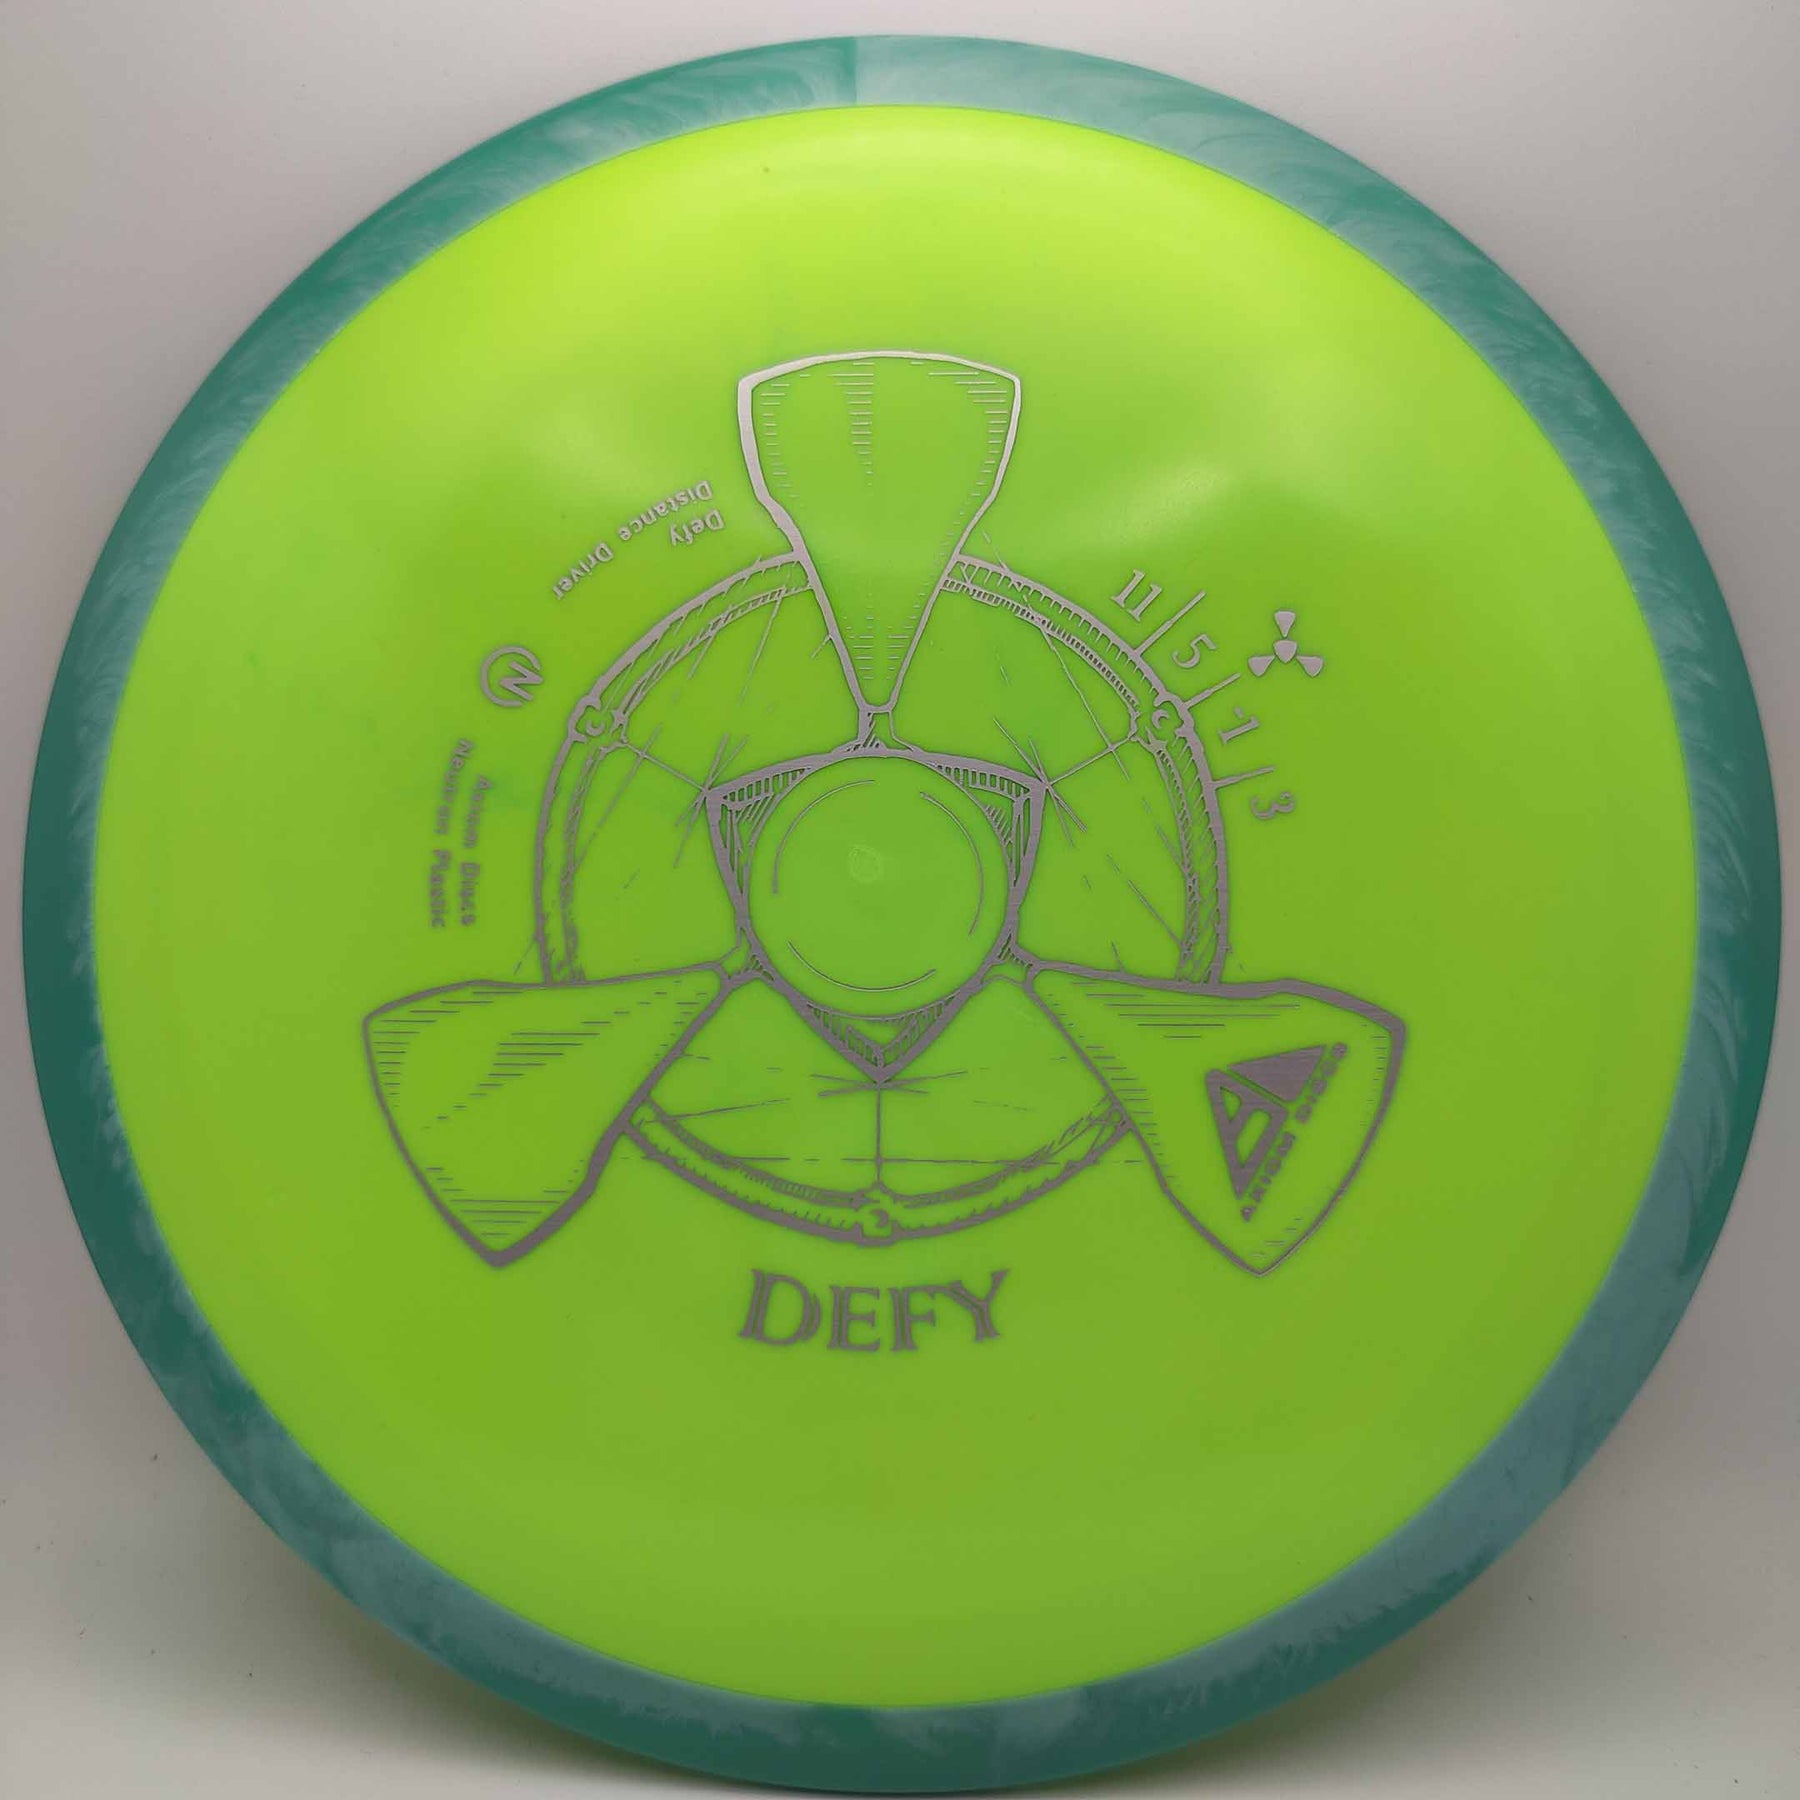 Axiom Defy - Neutron 170-175g